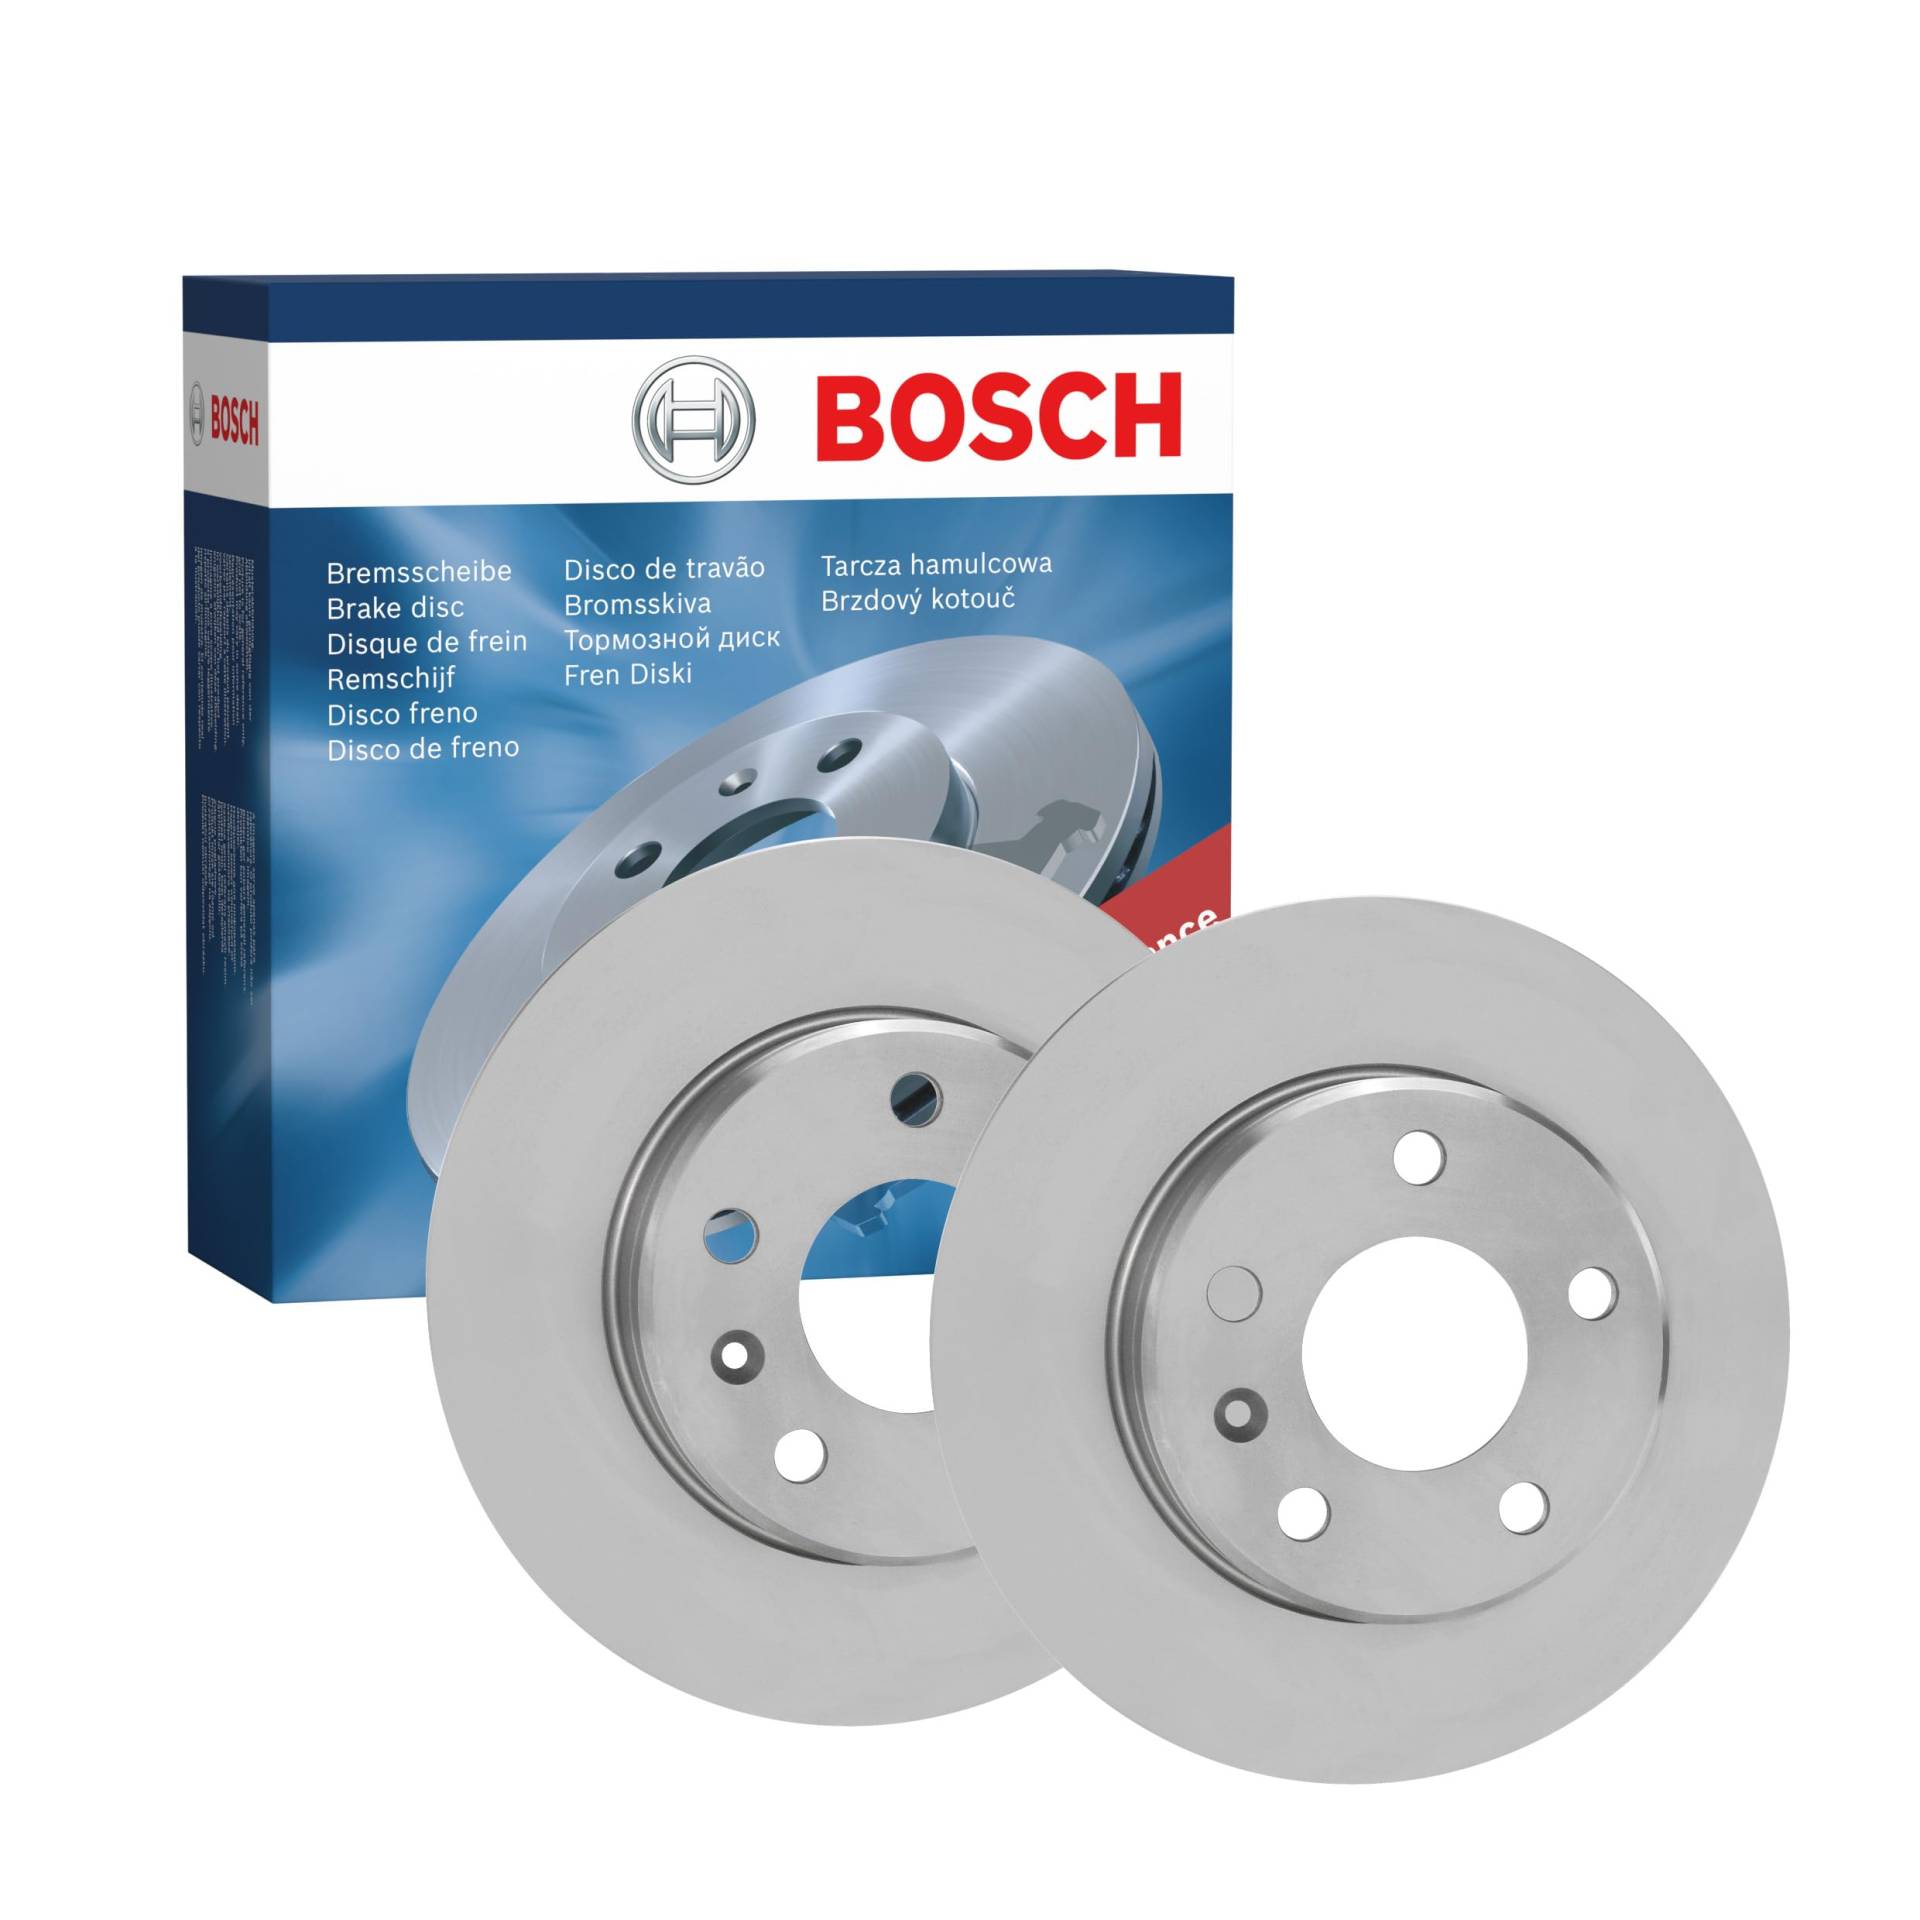 Bosch BD1370 Bremsscheiben - Hinterachse - ECE-R90 Zertifizierung - zwei Bremsscheiben pro Set von Bosch Automotive